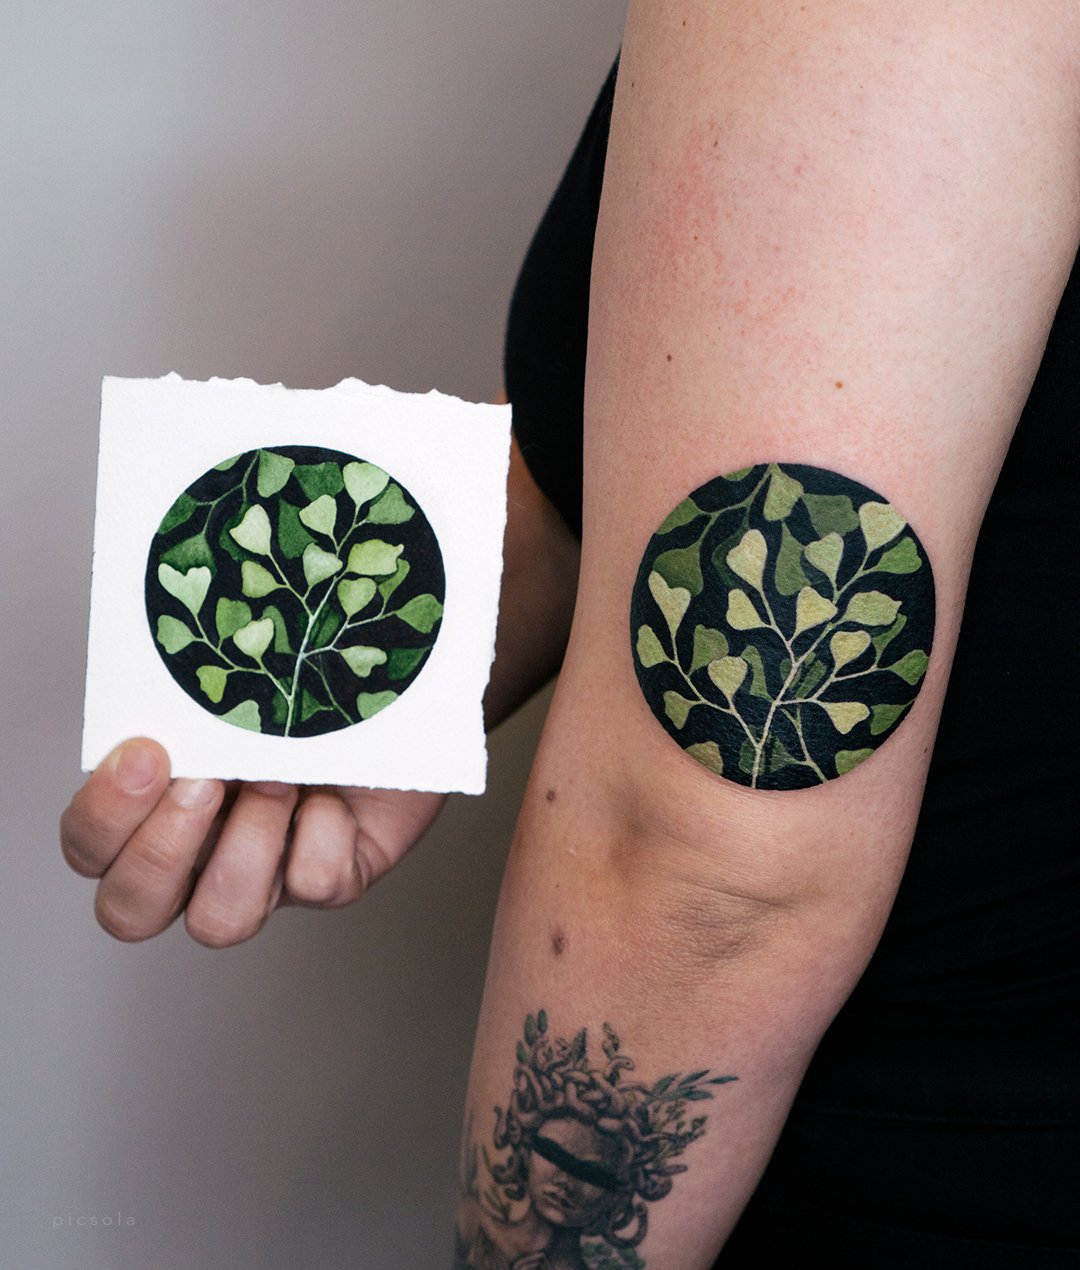 Pin by Chelsea Roach on Tattoos | Bodhi tattoo, Buddhist tattoo, Tattoos